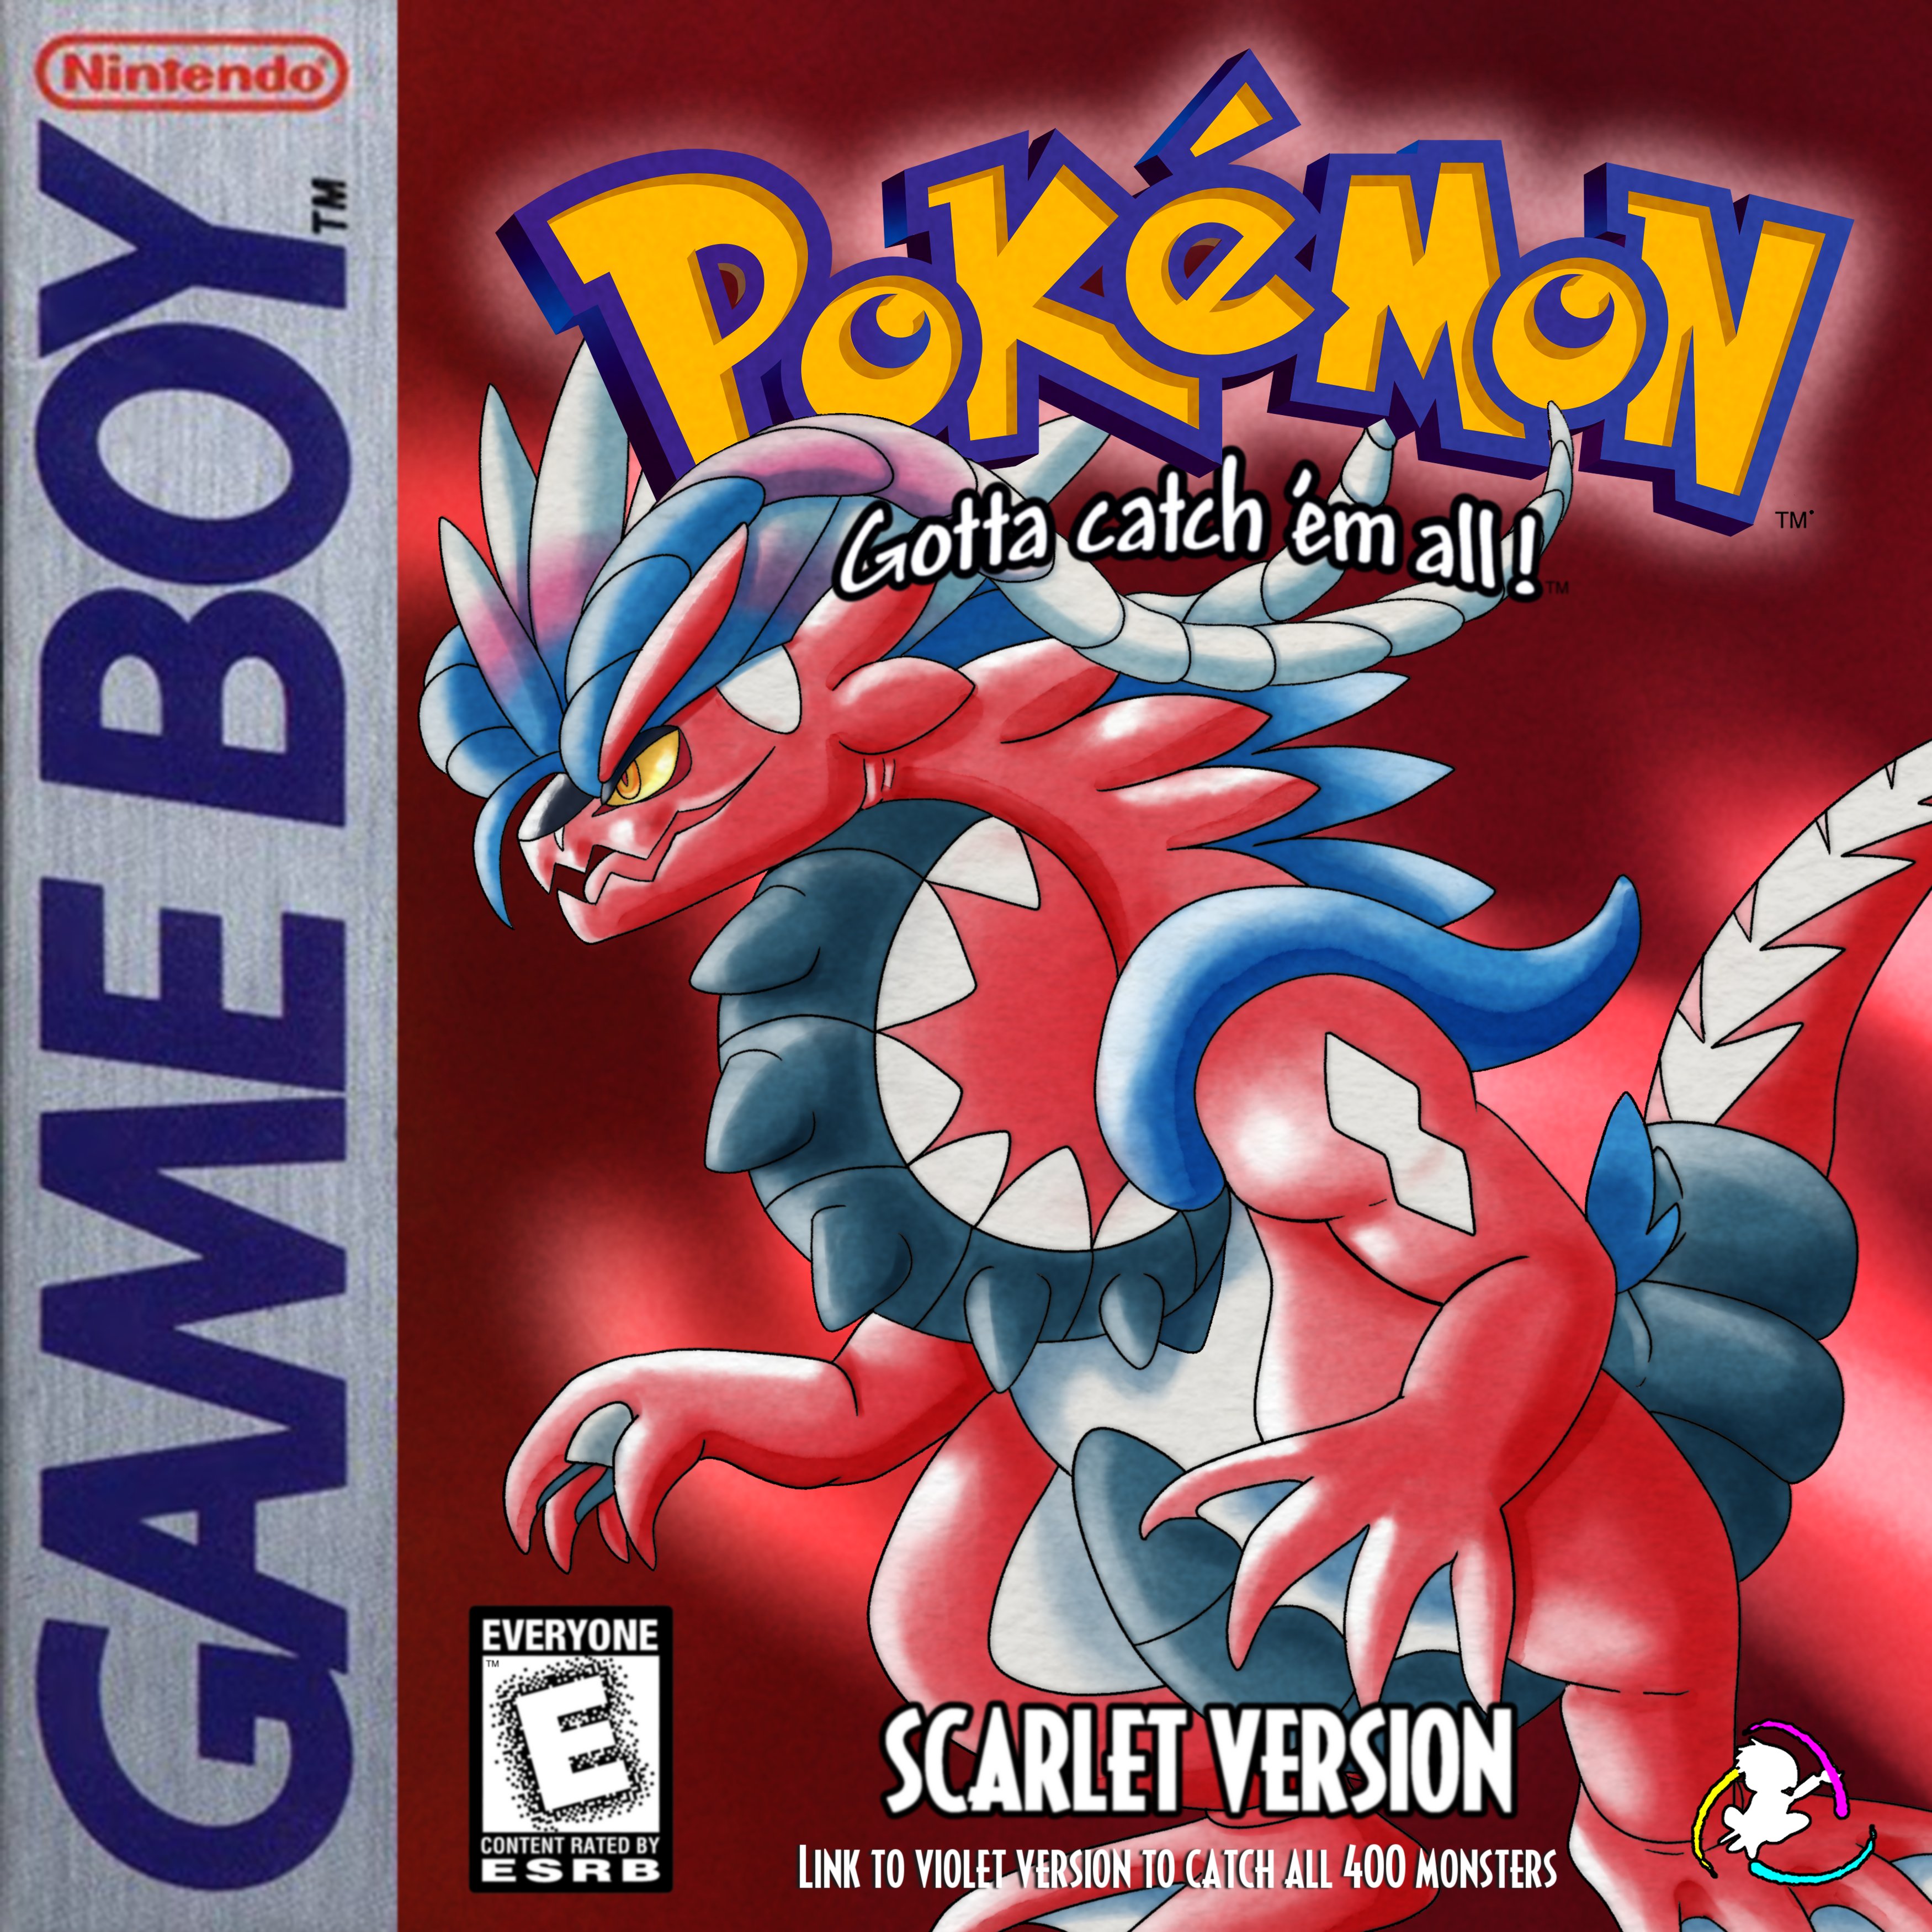 Pokémon Scarlet and Violet (GBA)